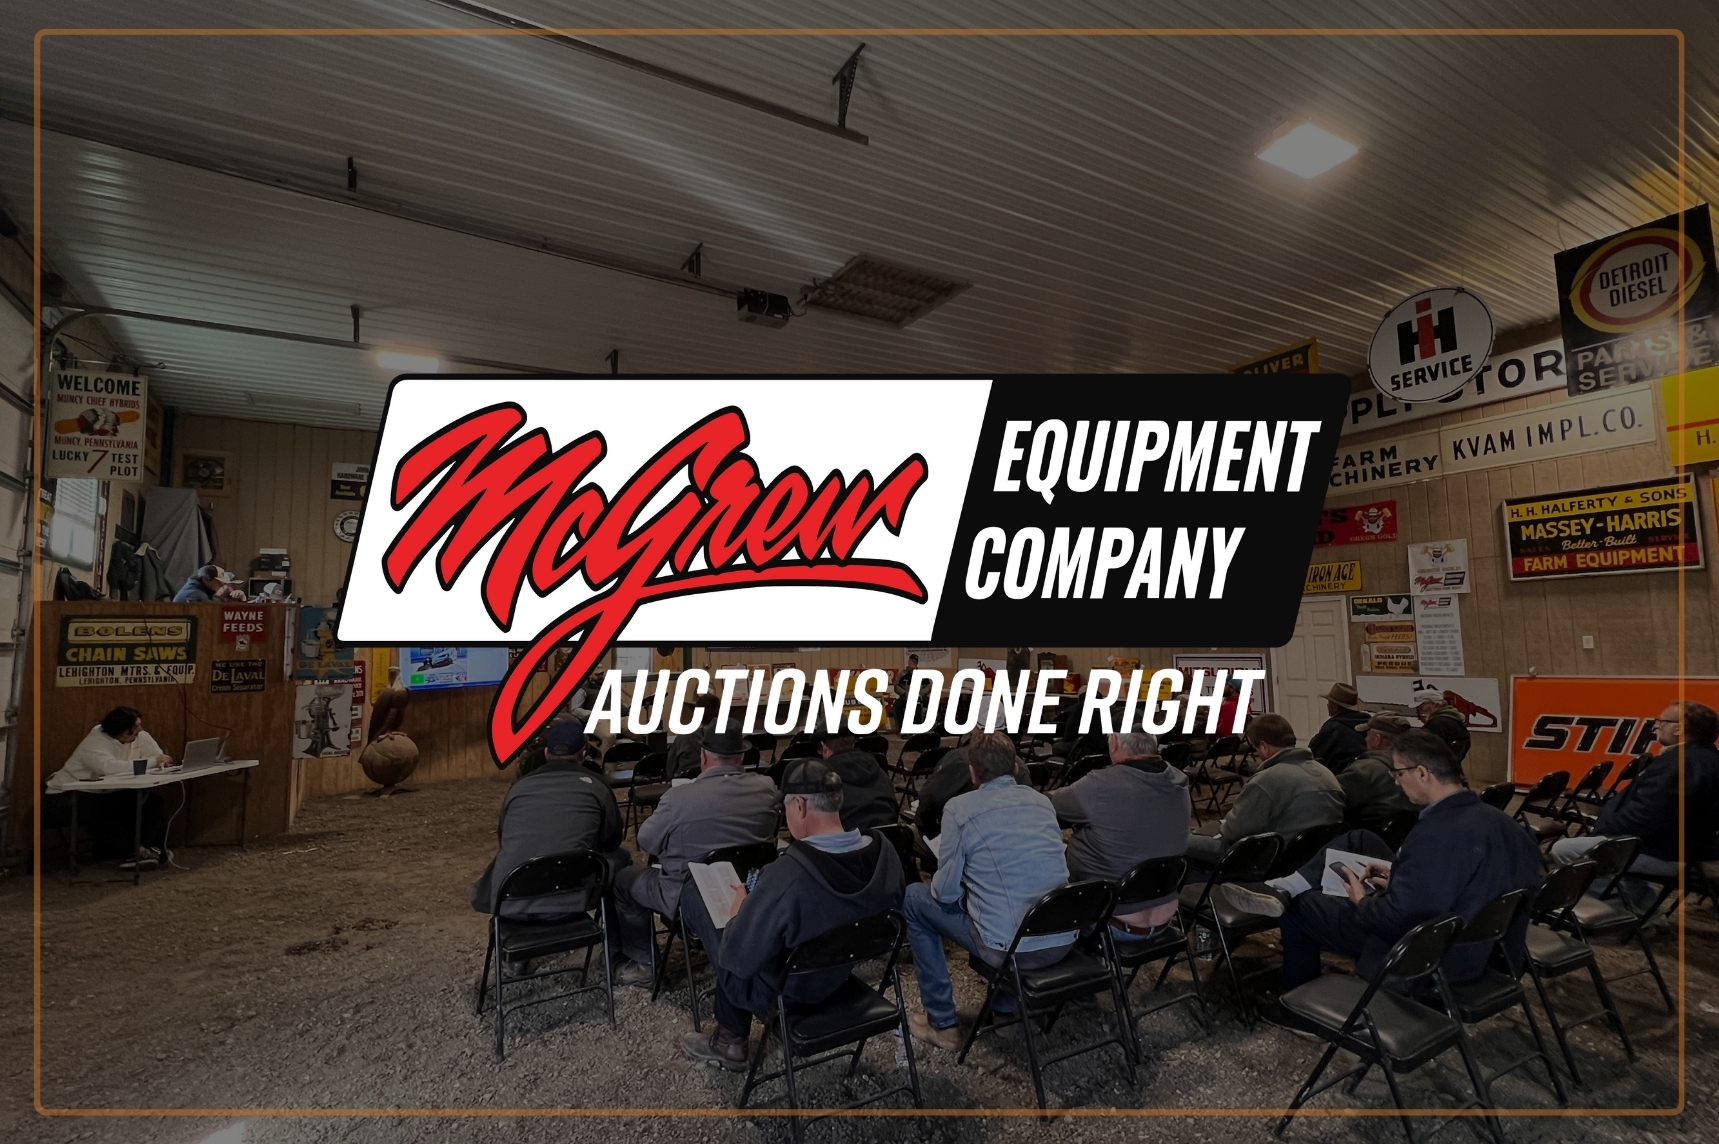 McGrew Equipment's Live ONSITE Auction